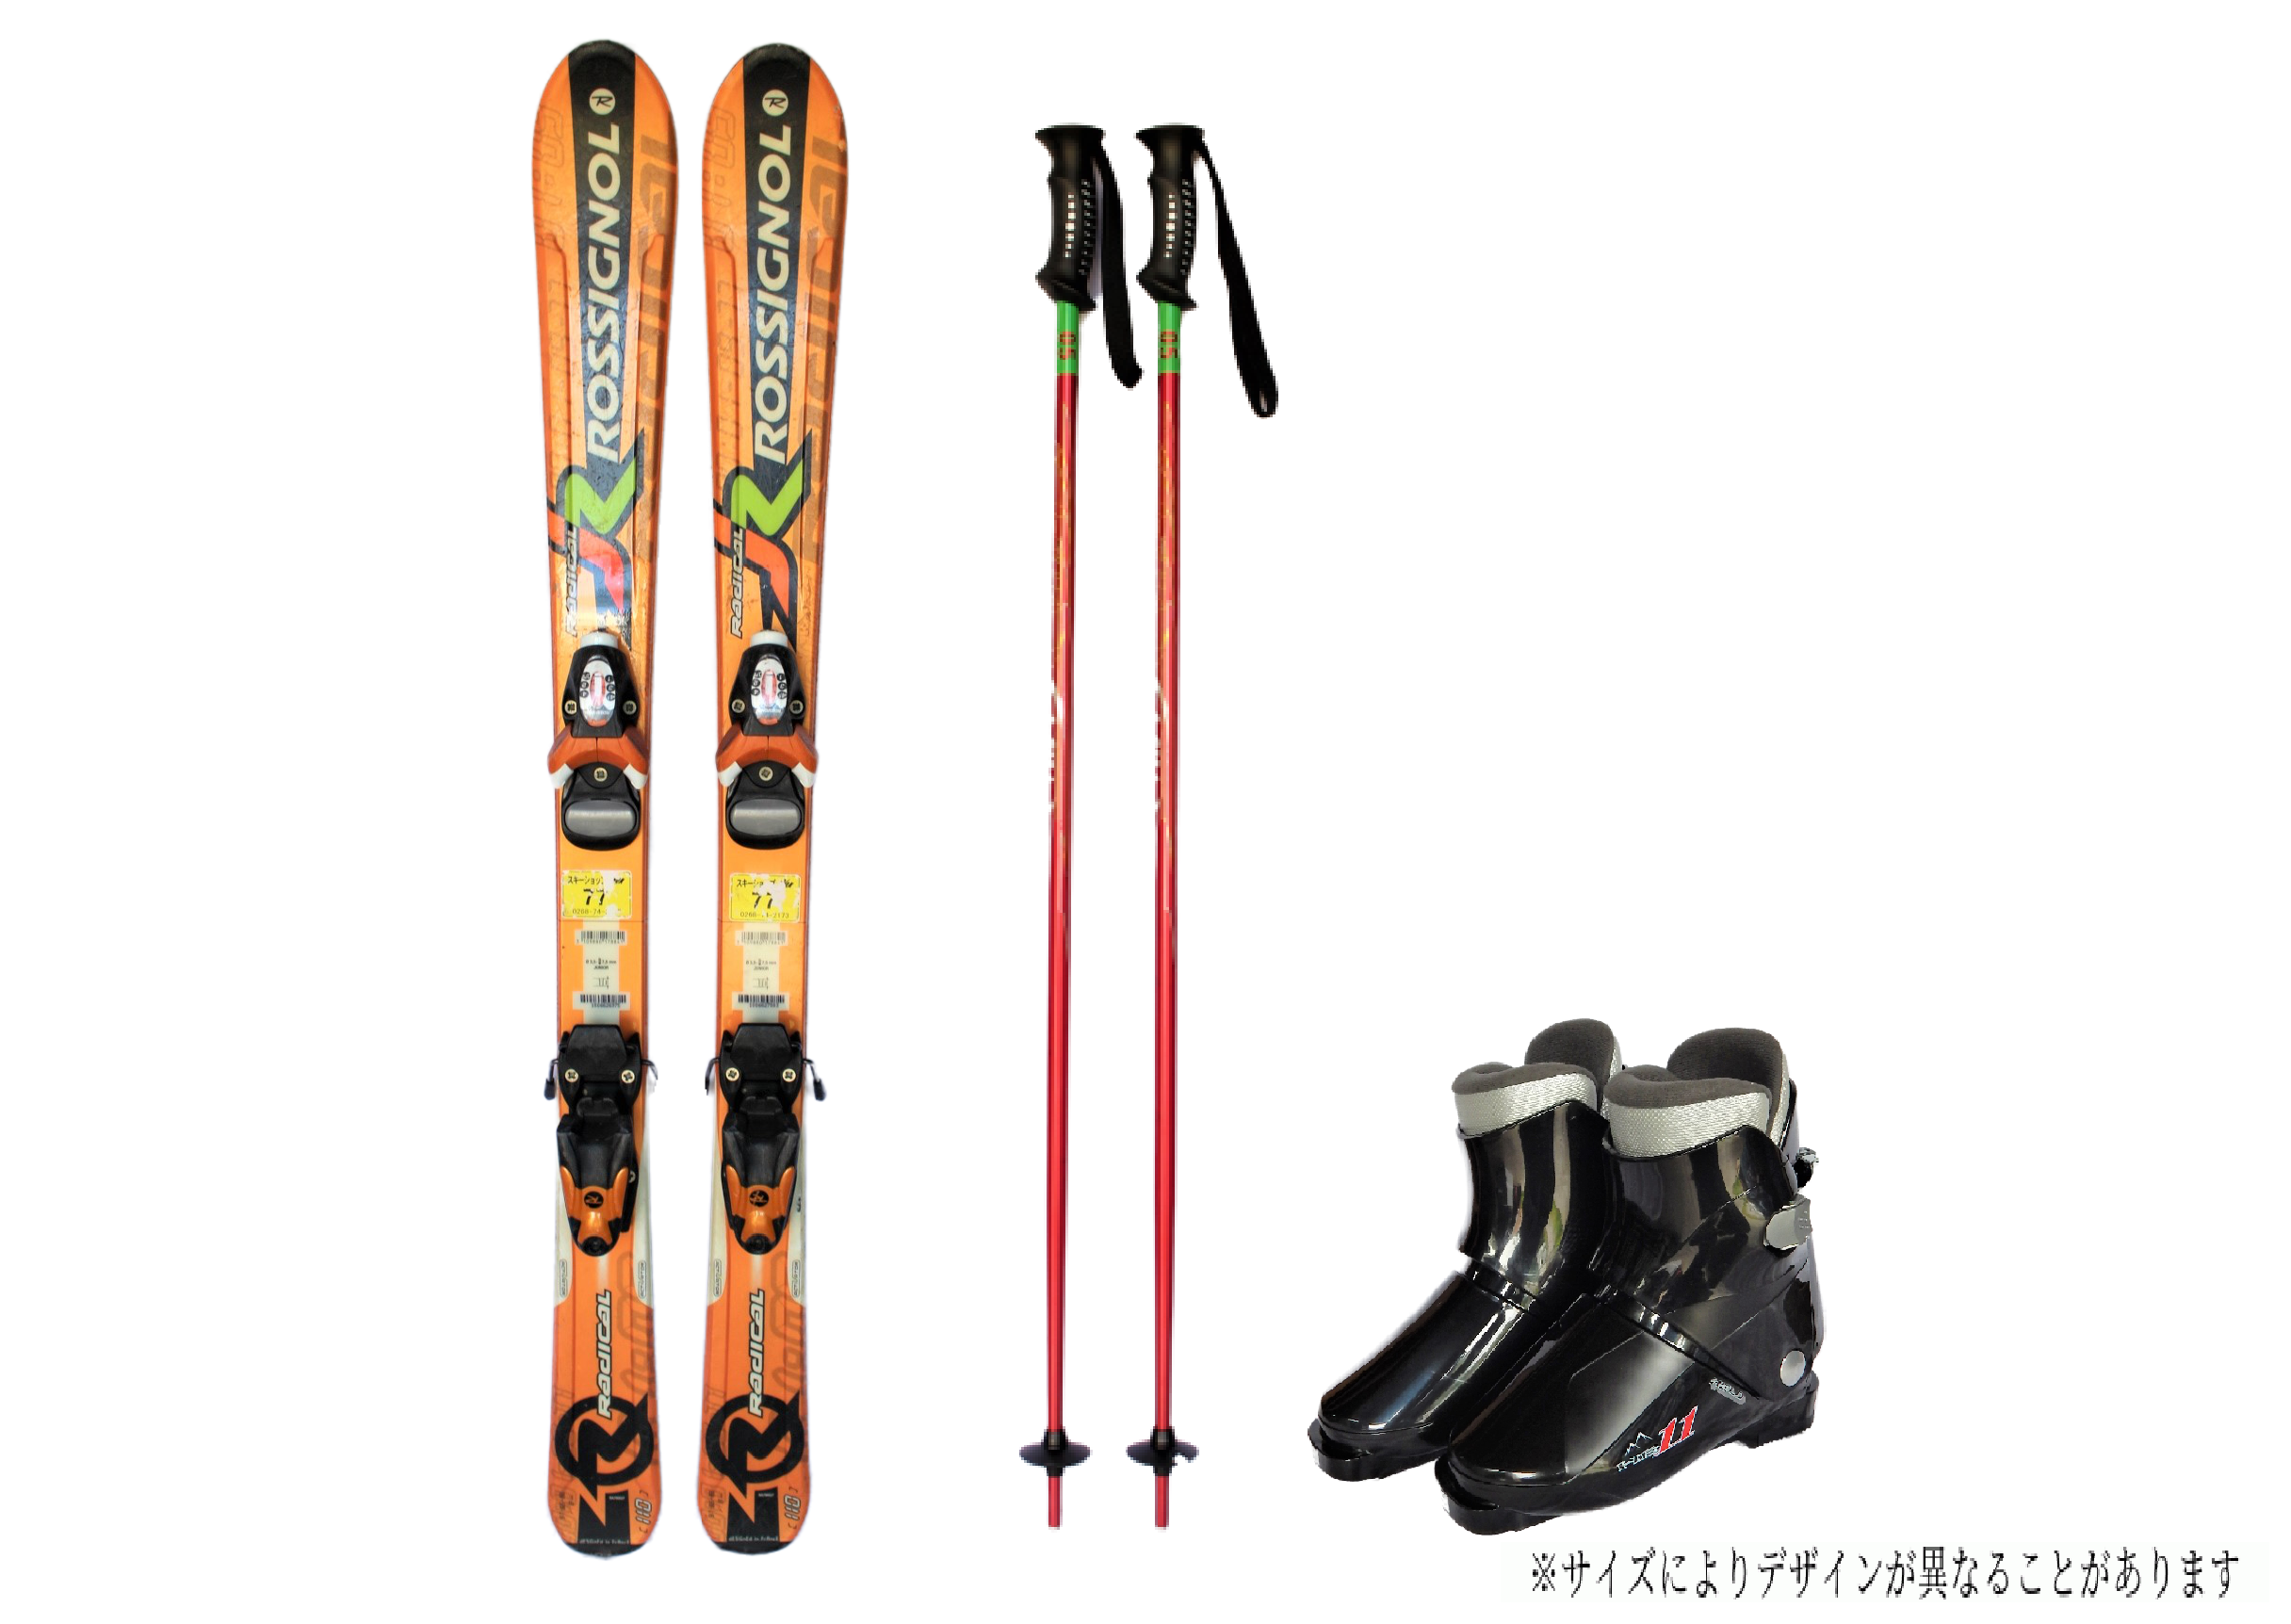 【12月開催スキー・スノーボードツアー】レンタルスキー・レンタルスノーボード申込ページ